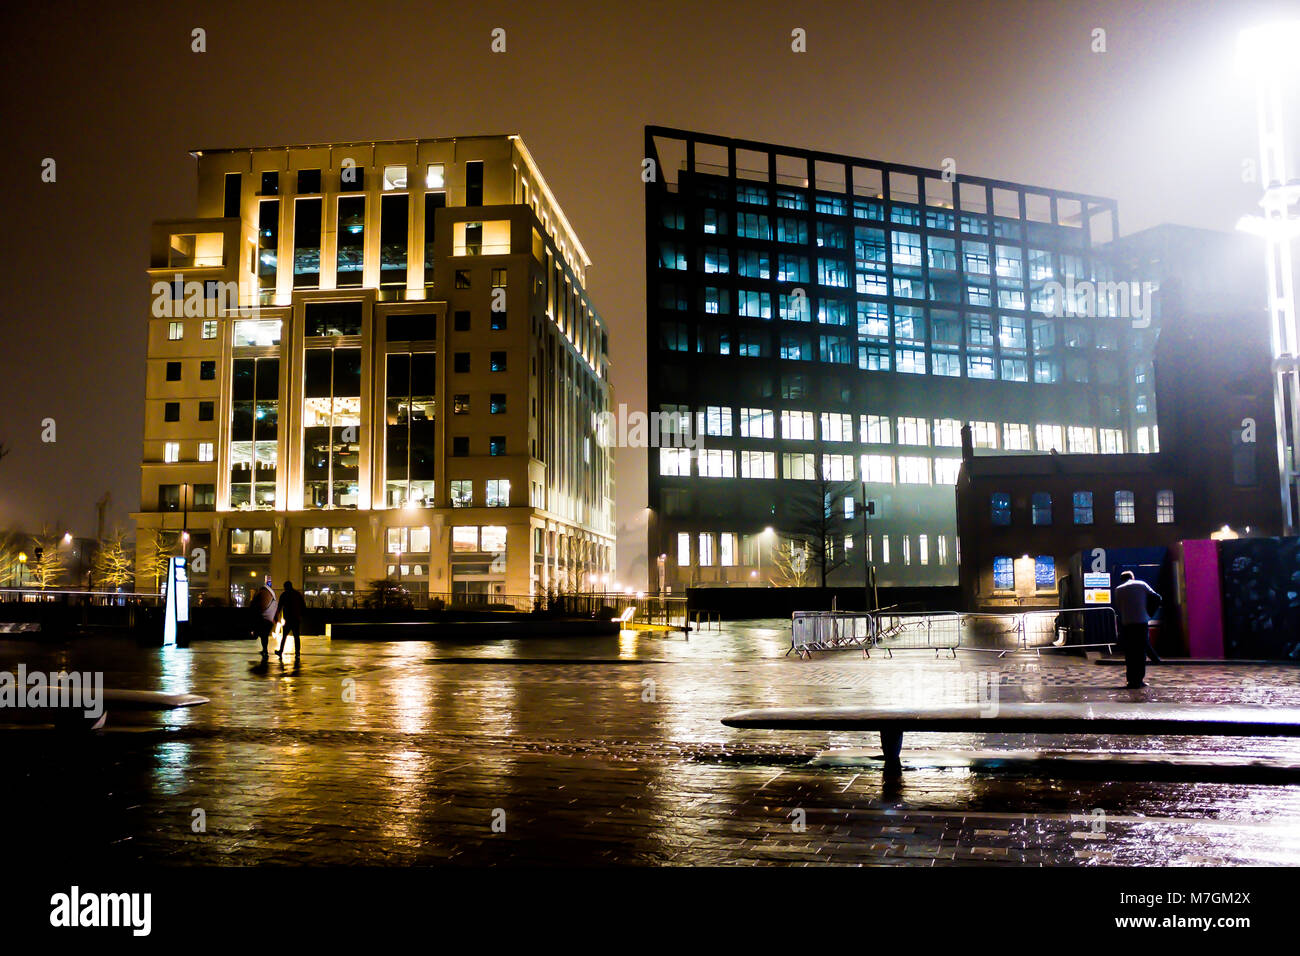 Les bâtiments modernes éclairés la nuit dans la région de Kings Cross, St Pancras à Londres UK Banque D'Images